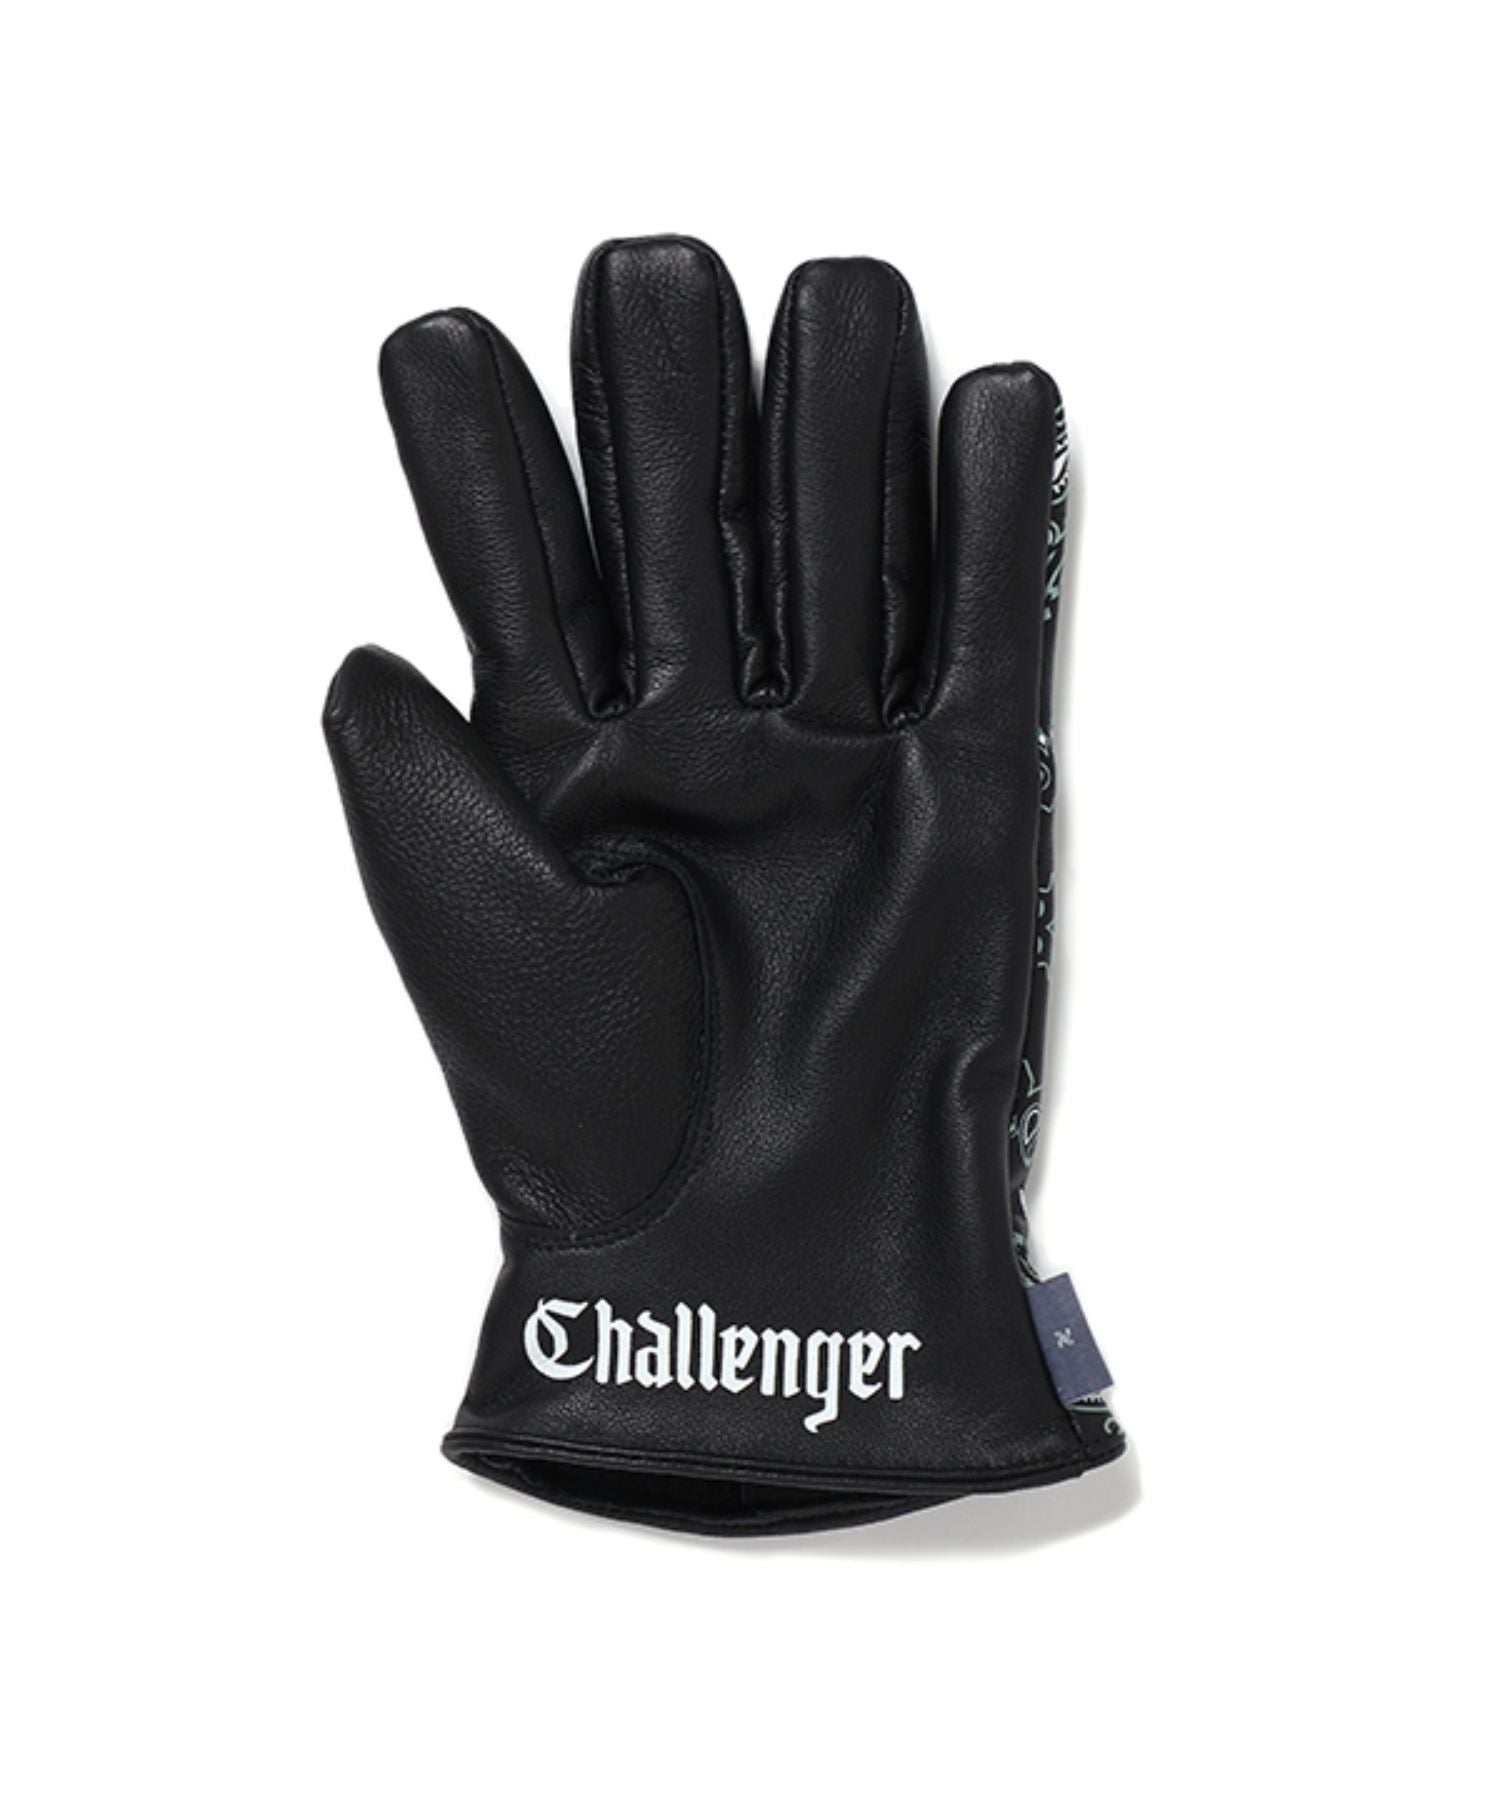 Bandana Leather Glove